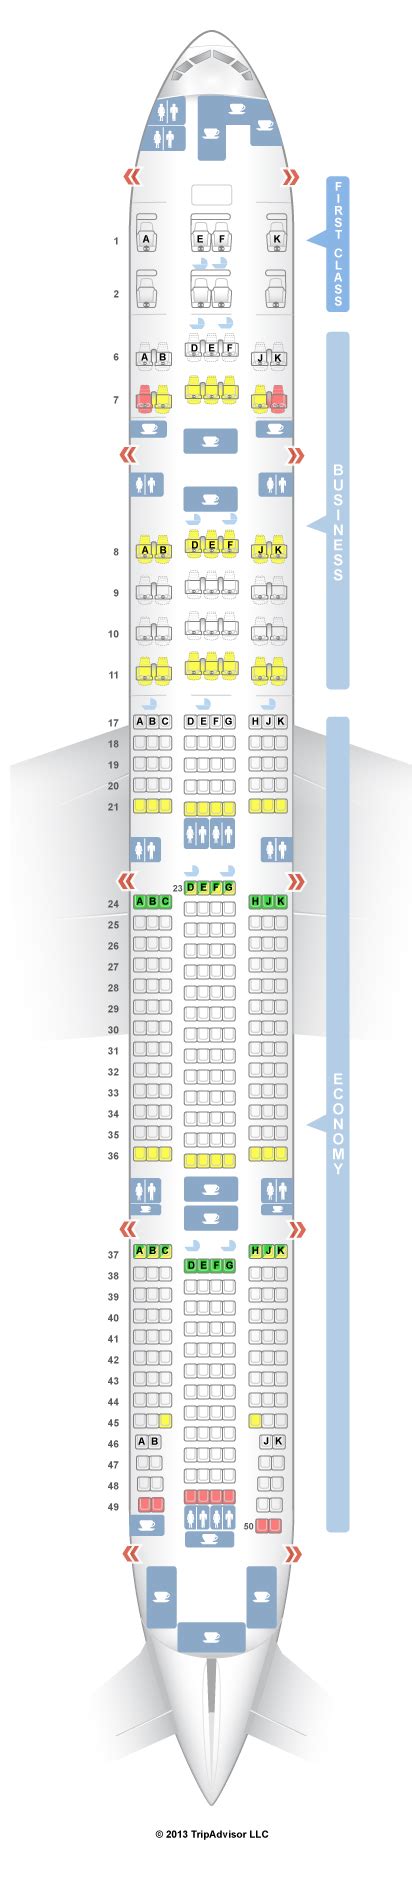 emirates seat map 777-300er